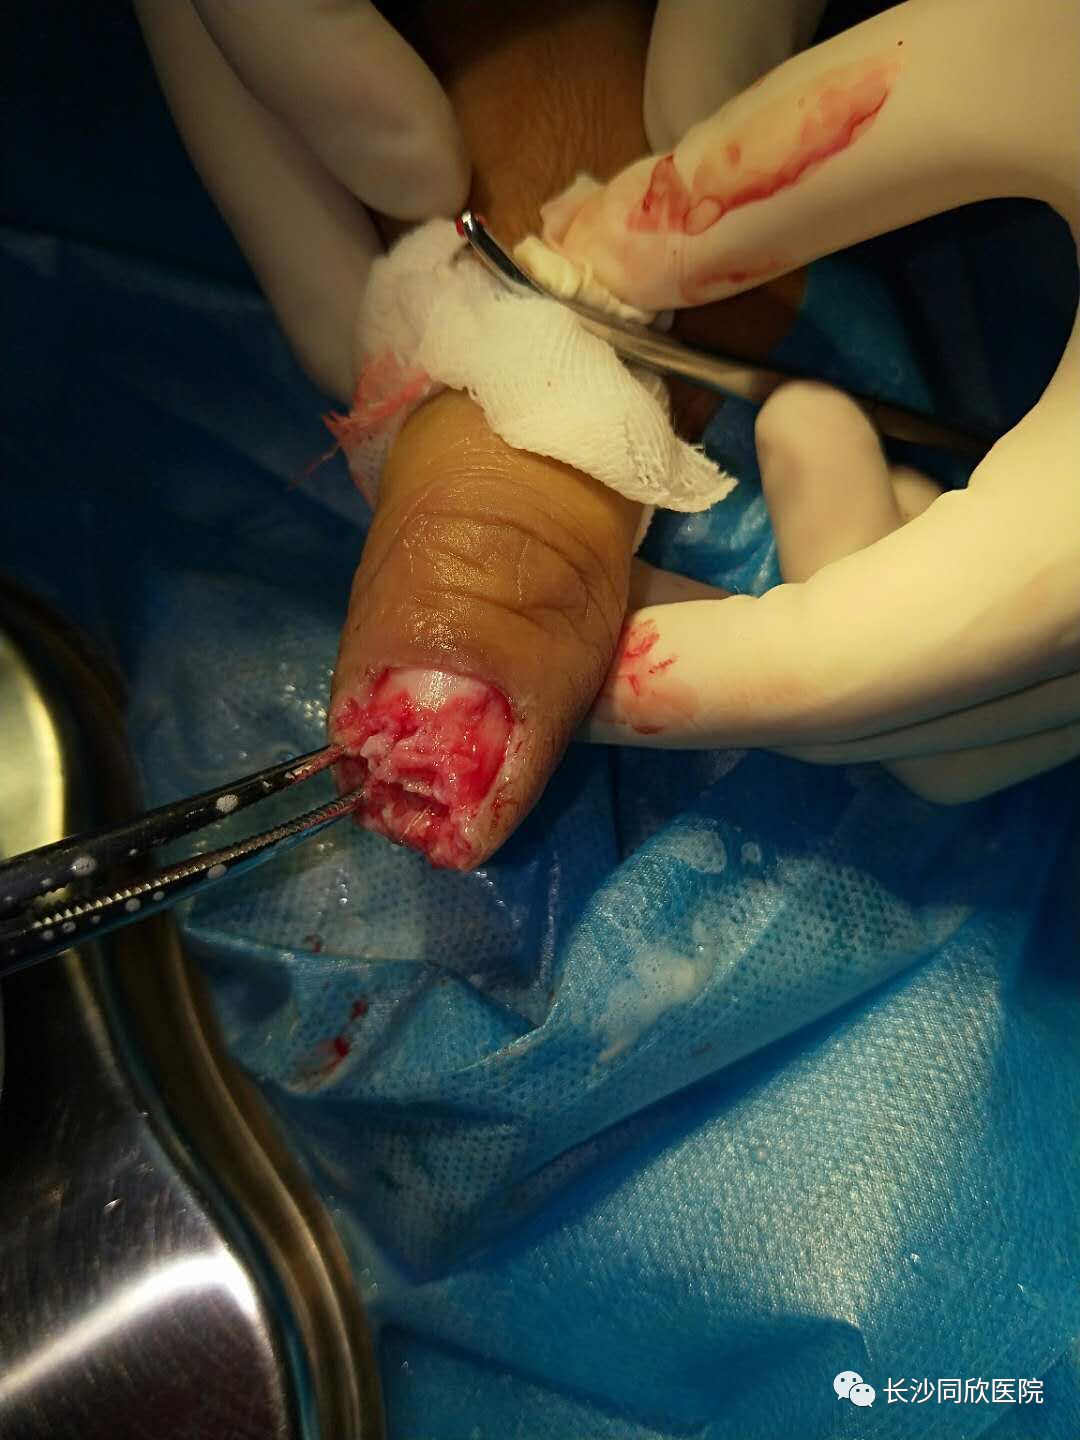 可提供不同修复方法:邻指皮瓣修复,岛状皮瓣,带蒂腹部皮肤等等,但患者